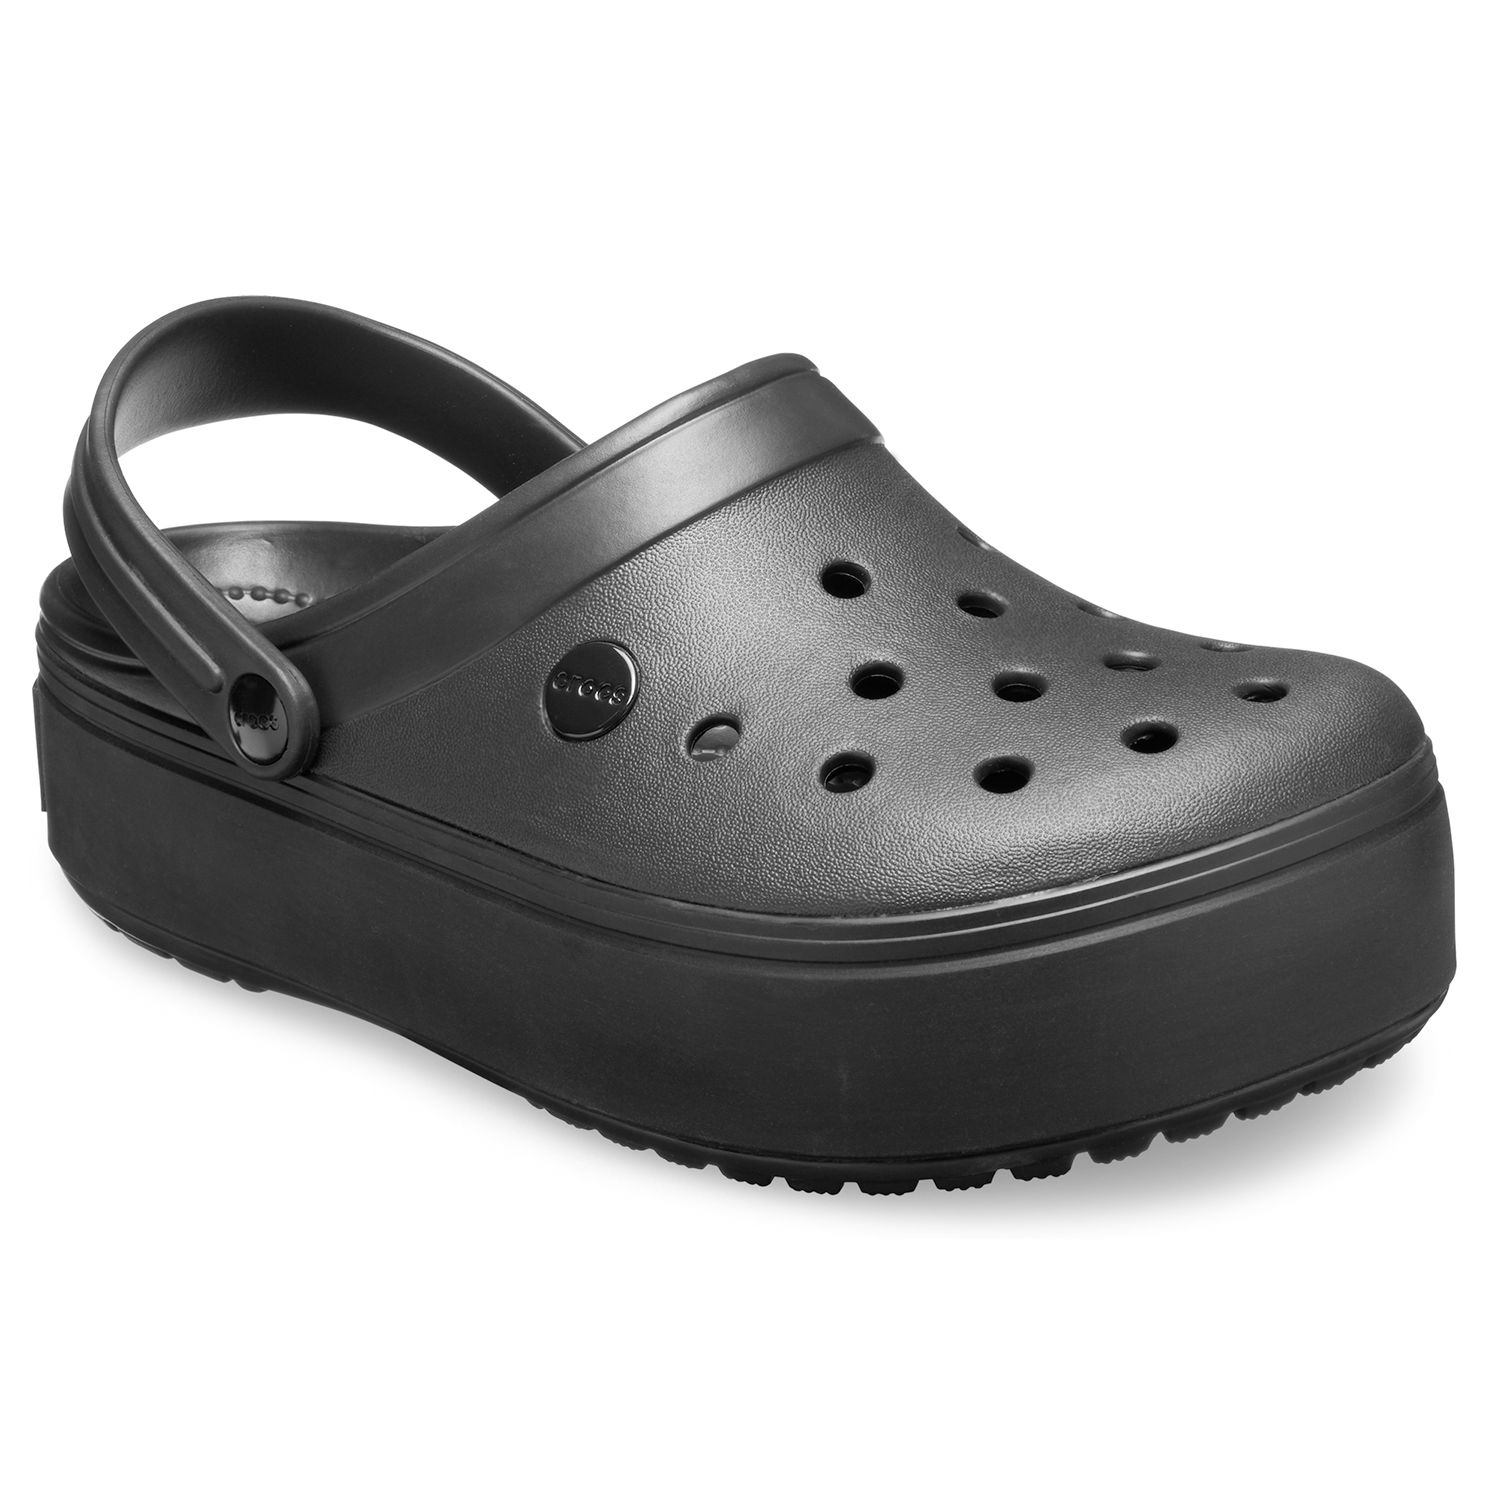 platform clogs crocs